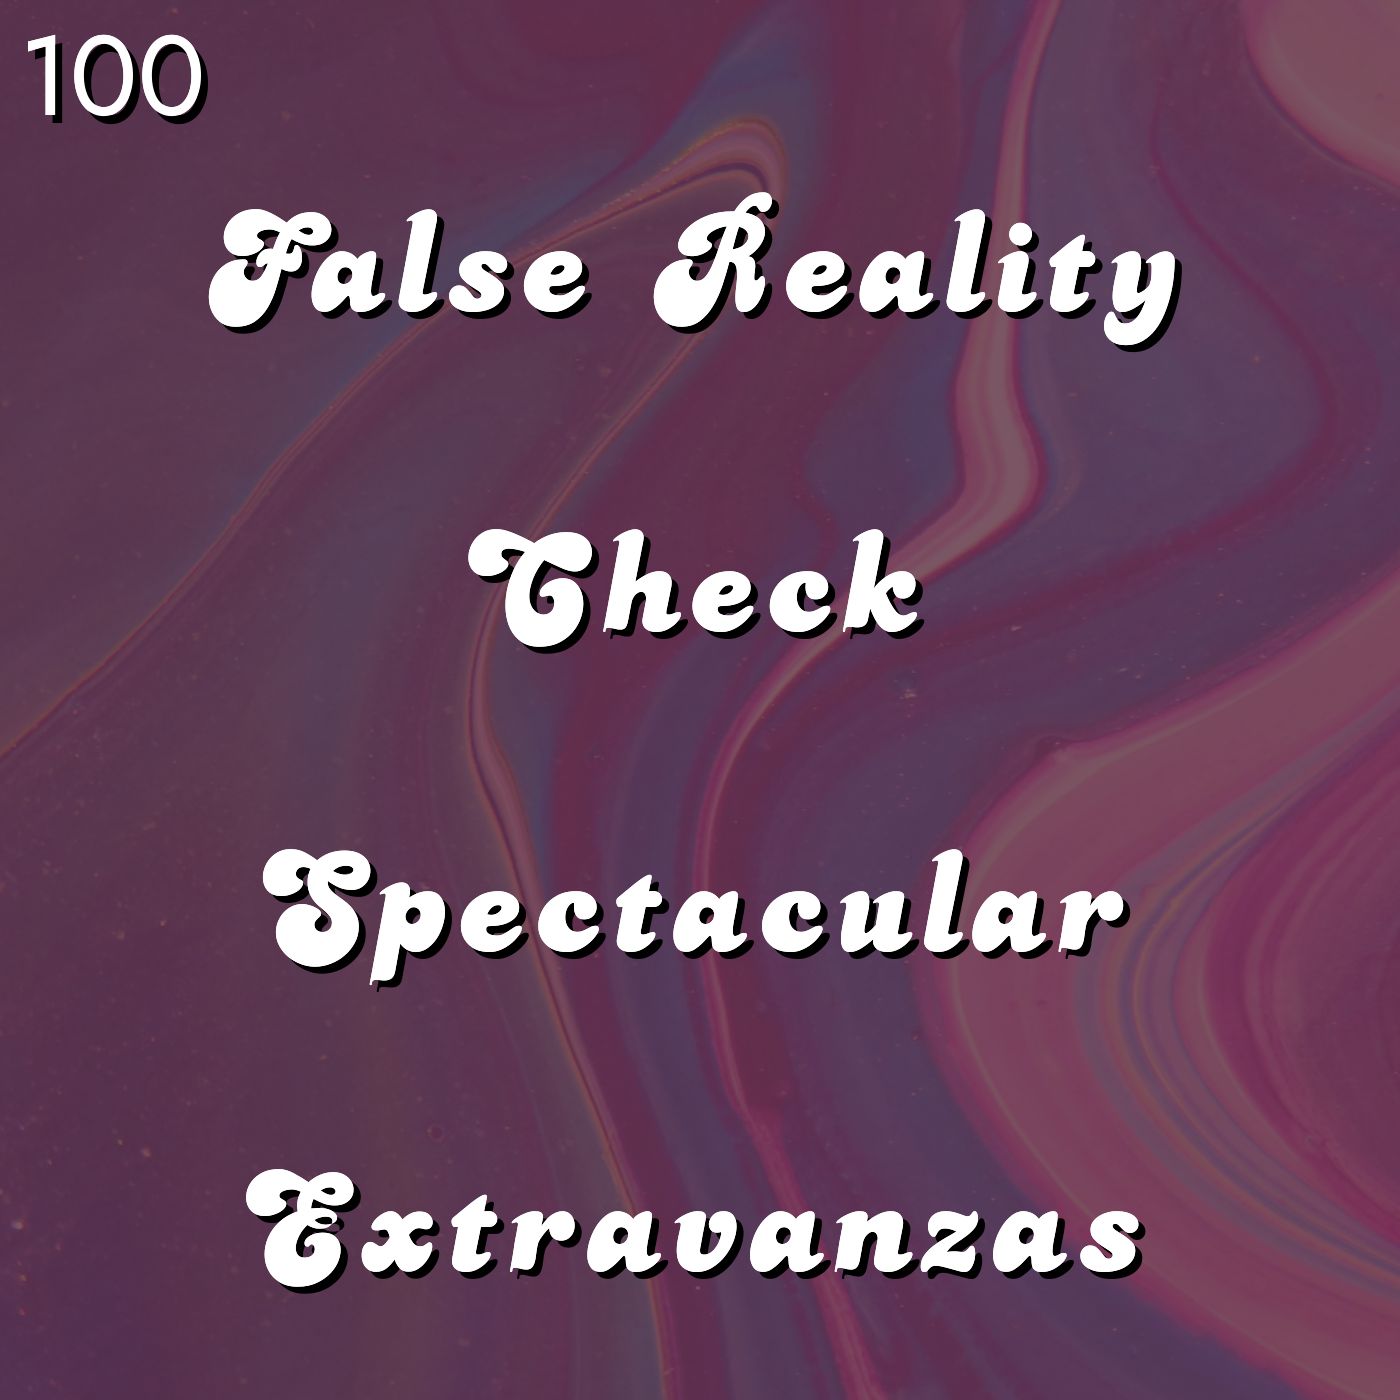 #100 - False Reality Check Spectacular Extravaganzas